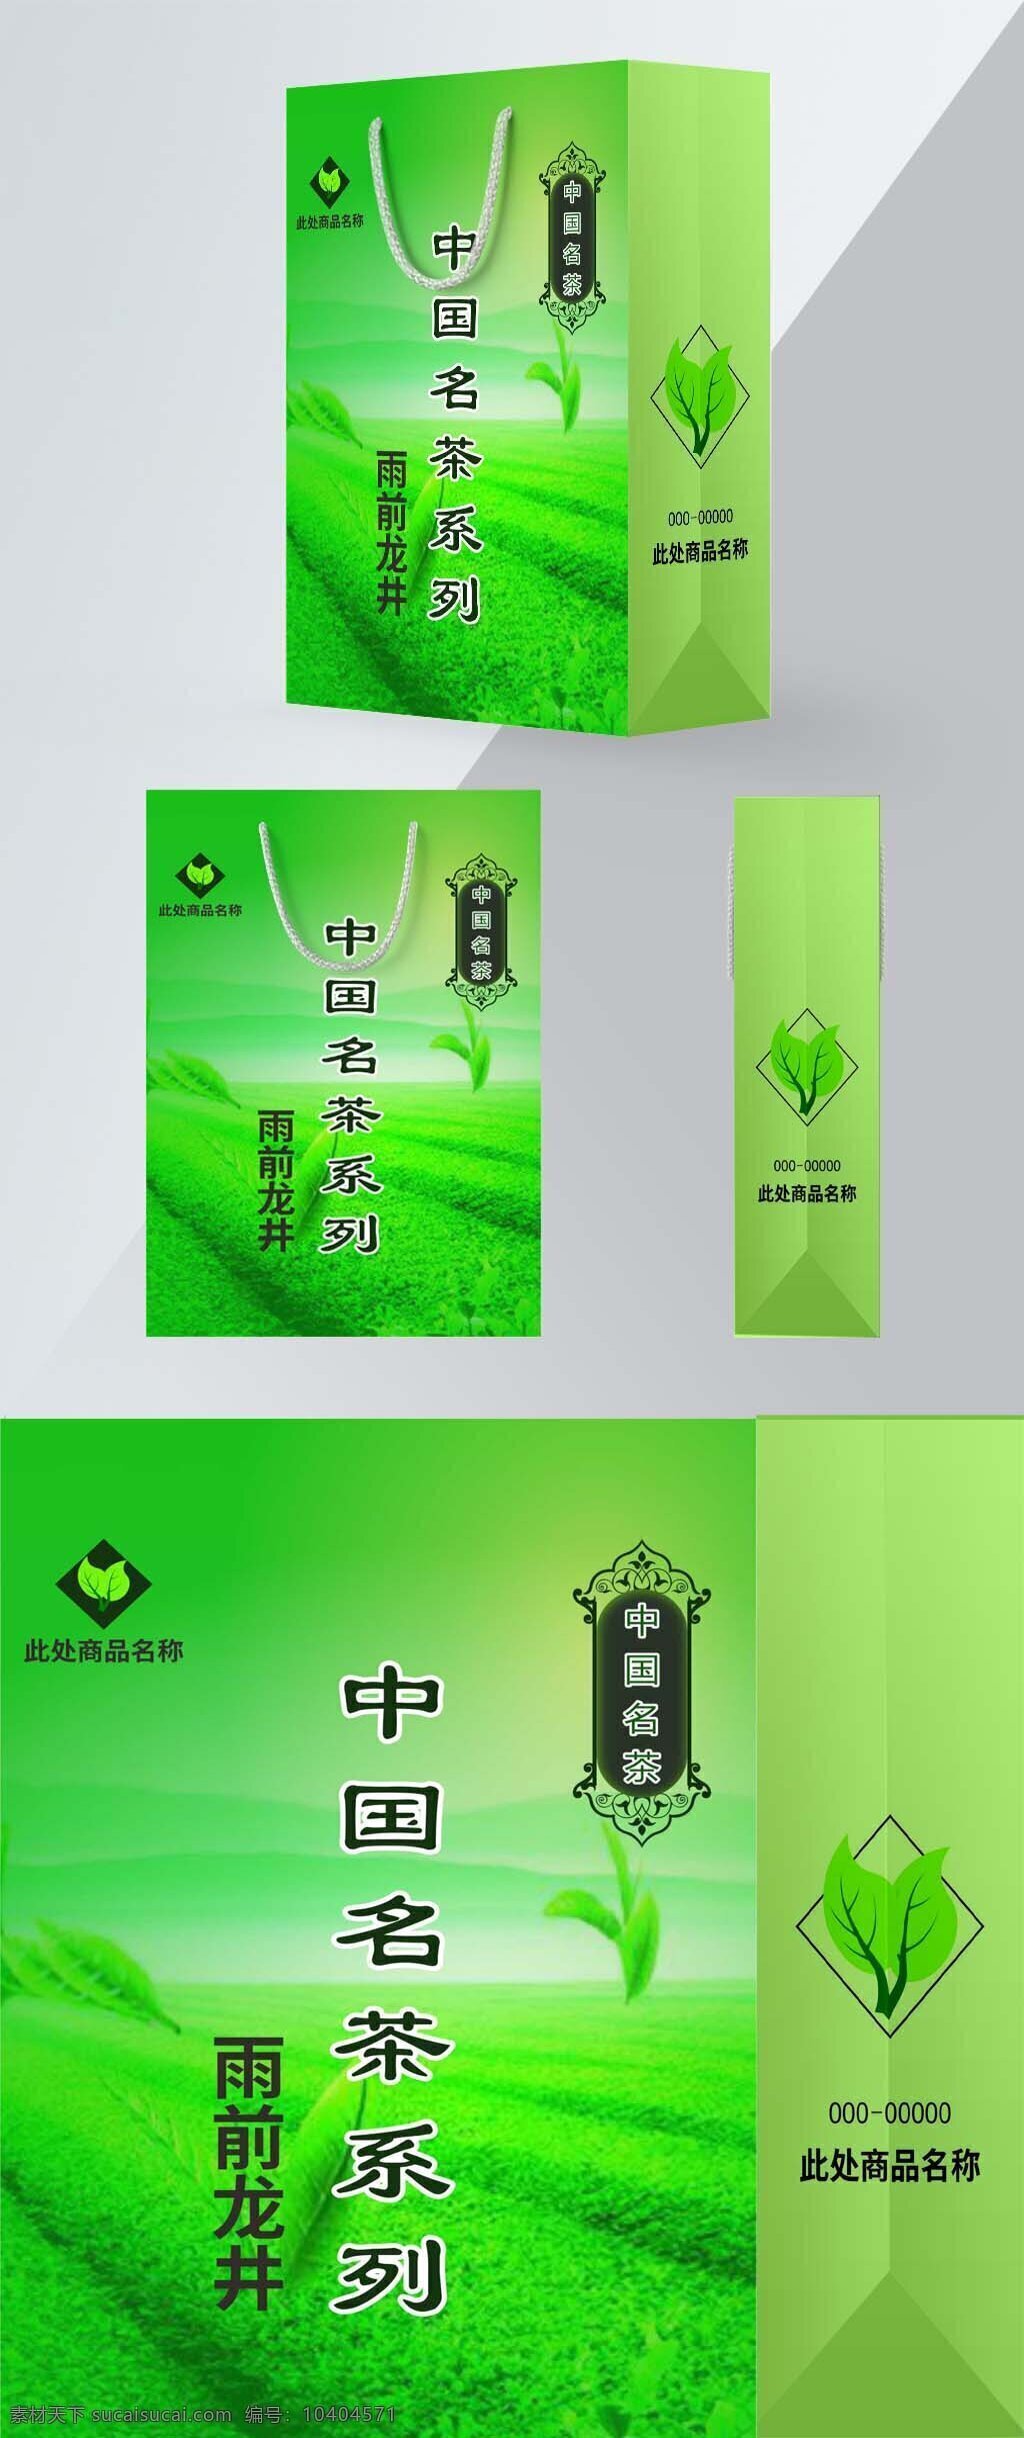 中国 名茶 系列 包装 手提袋 茶叶 绿色 包装设计 原创 名茶系列